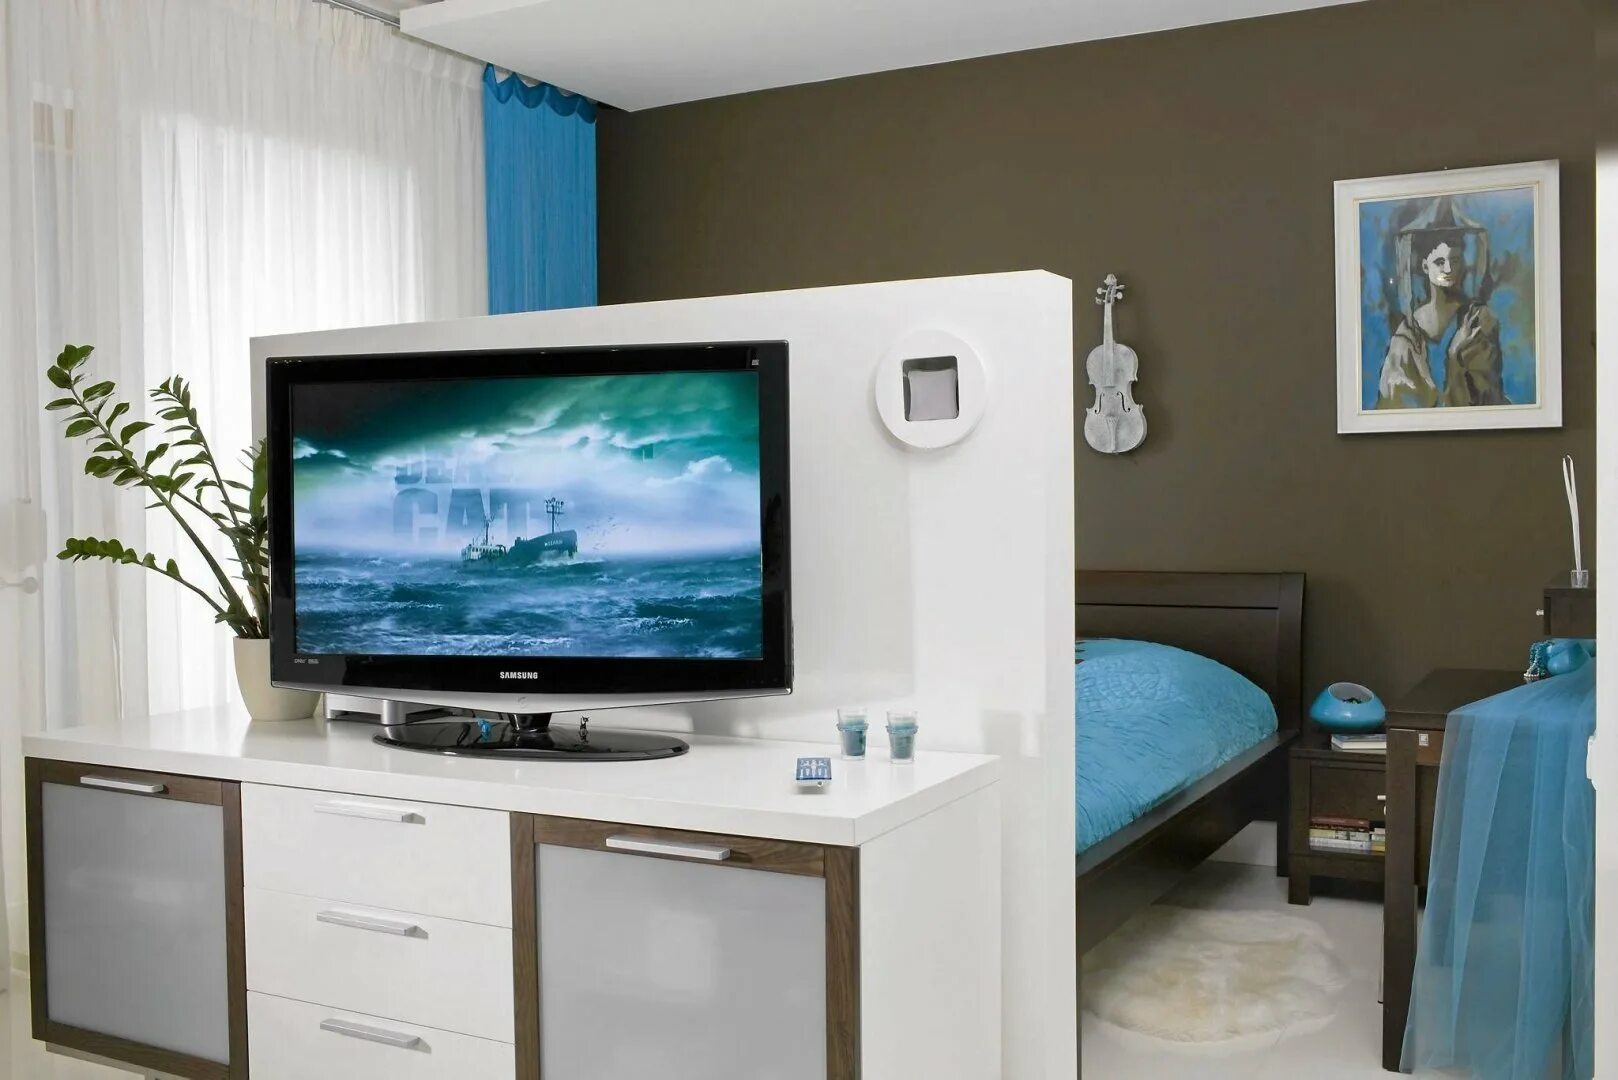 Телевизор в спальне. Телевизор в центре комнаты. Спальня с перегородкой для телевизора. Телевизор на тумбе посреди комнаты.